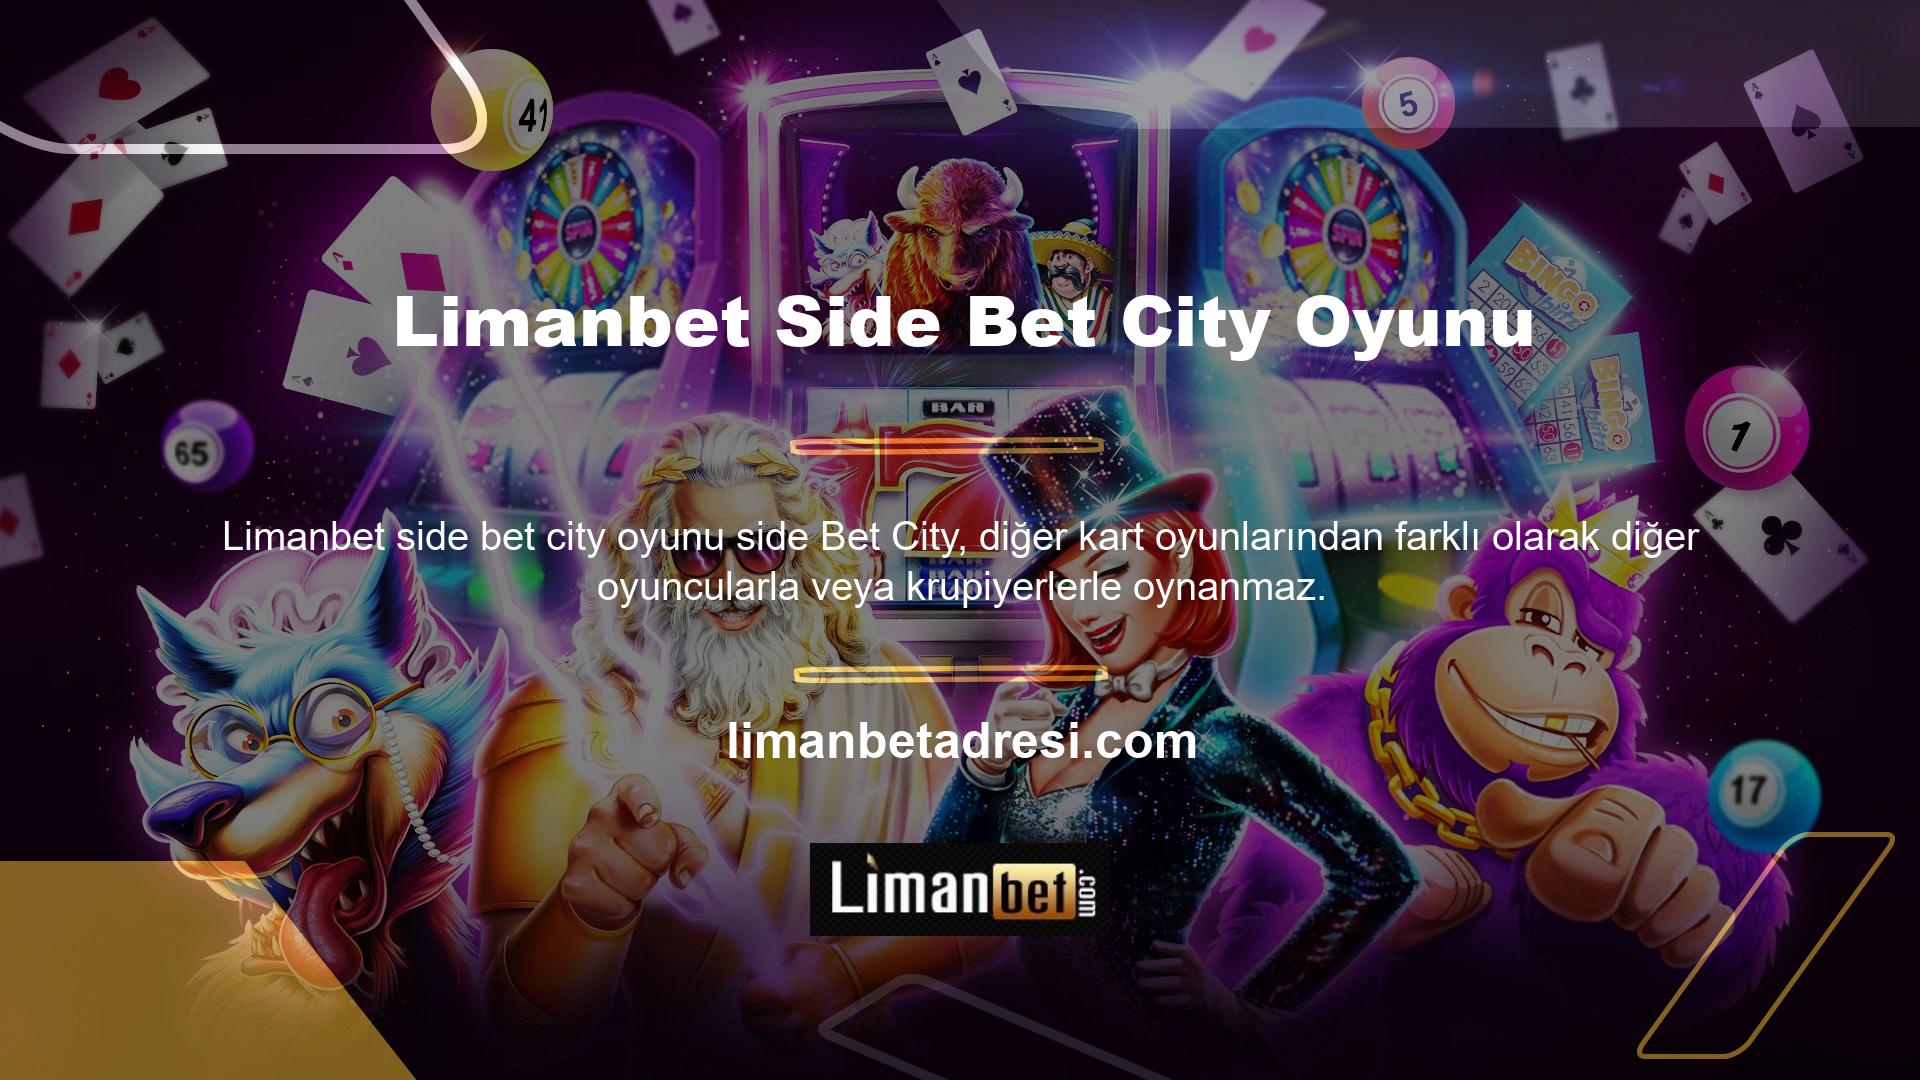 Side Betting City, başka birine karşı değil, ödeme tablosuna karşı oynanan bir oyundur